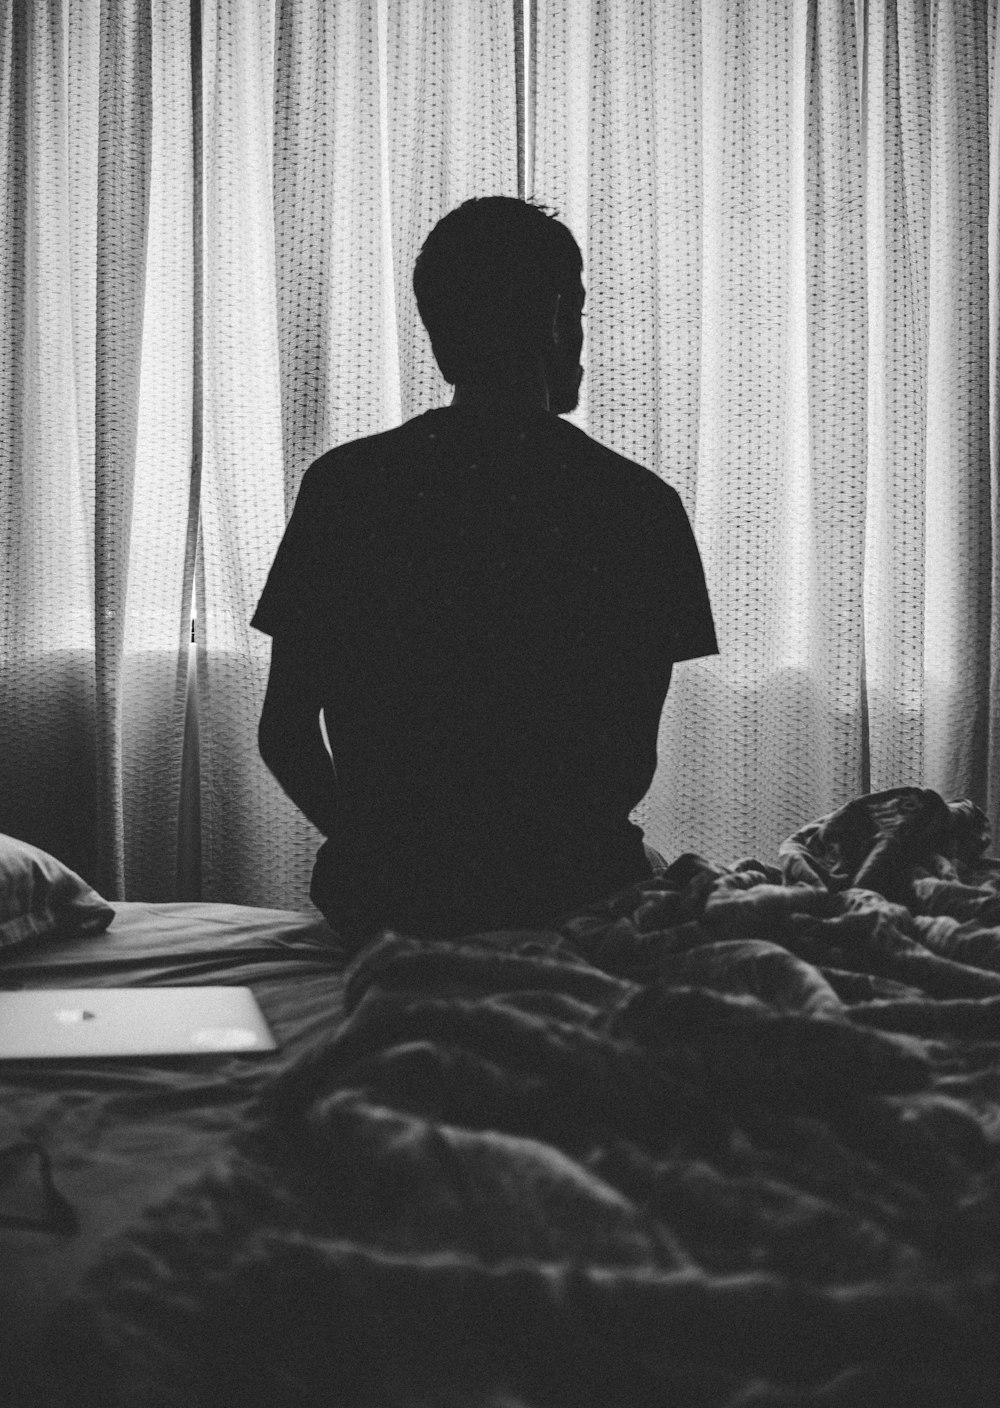 Photographie en niveaux de gris d’un homme assis sur un lit